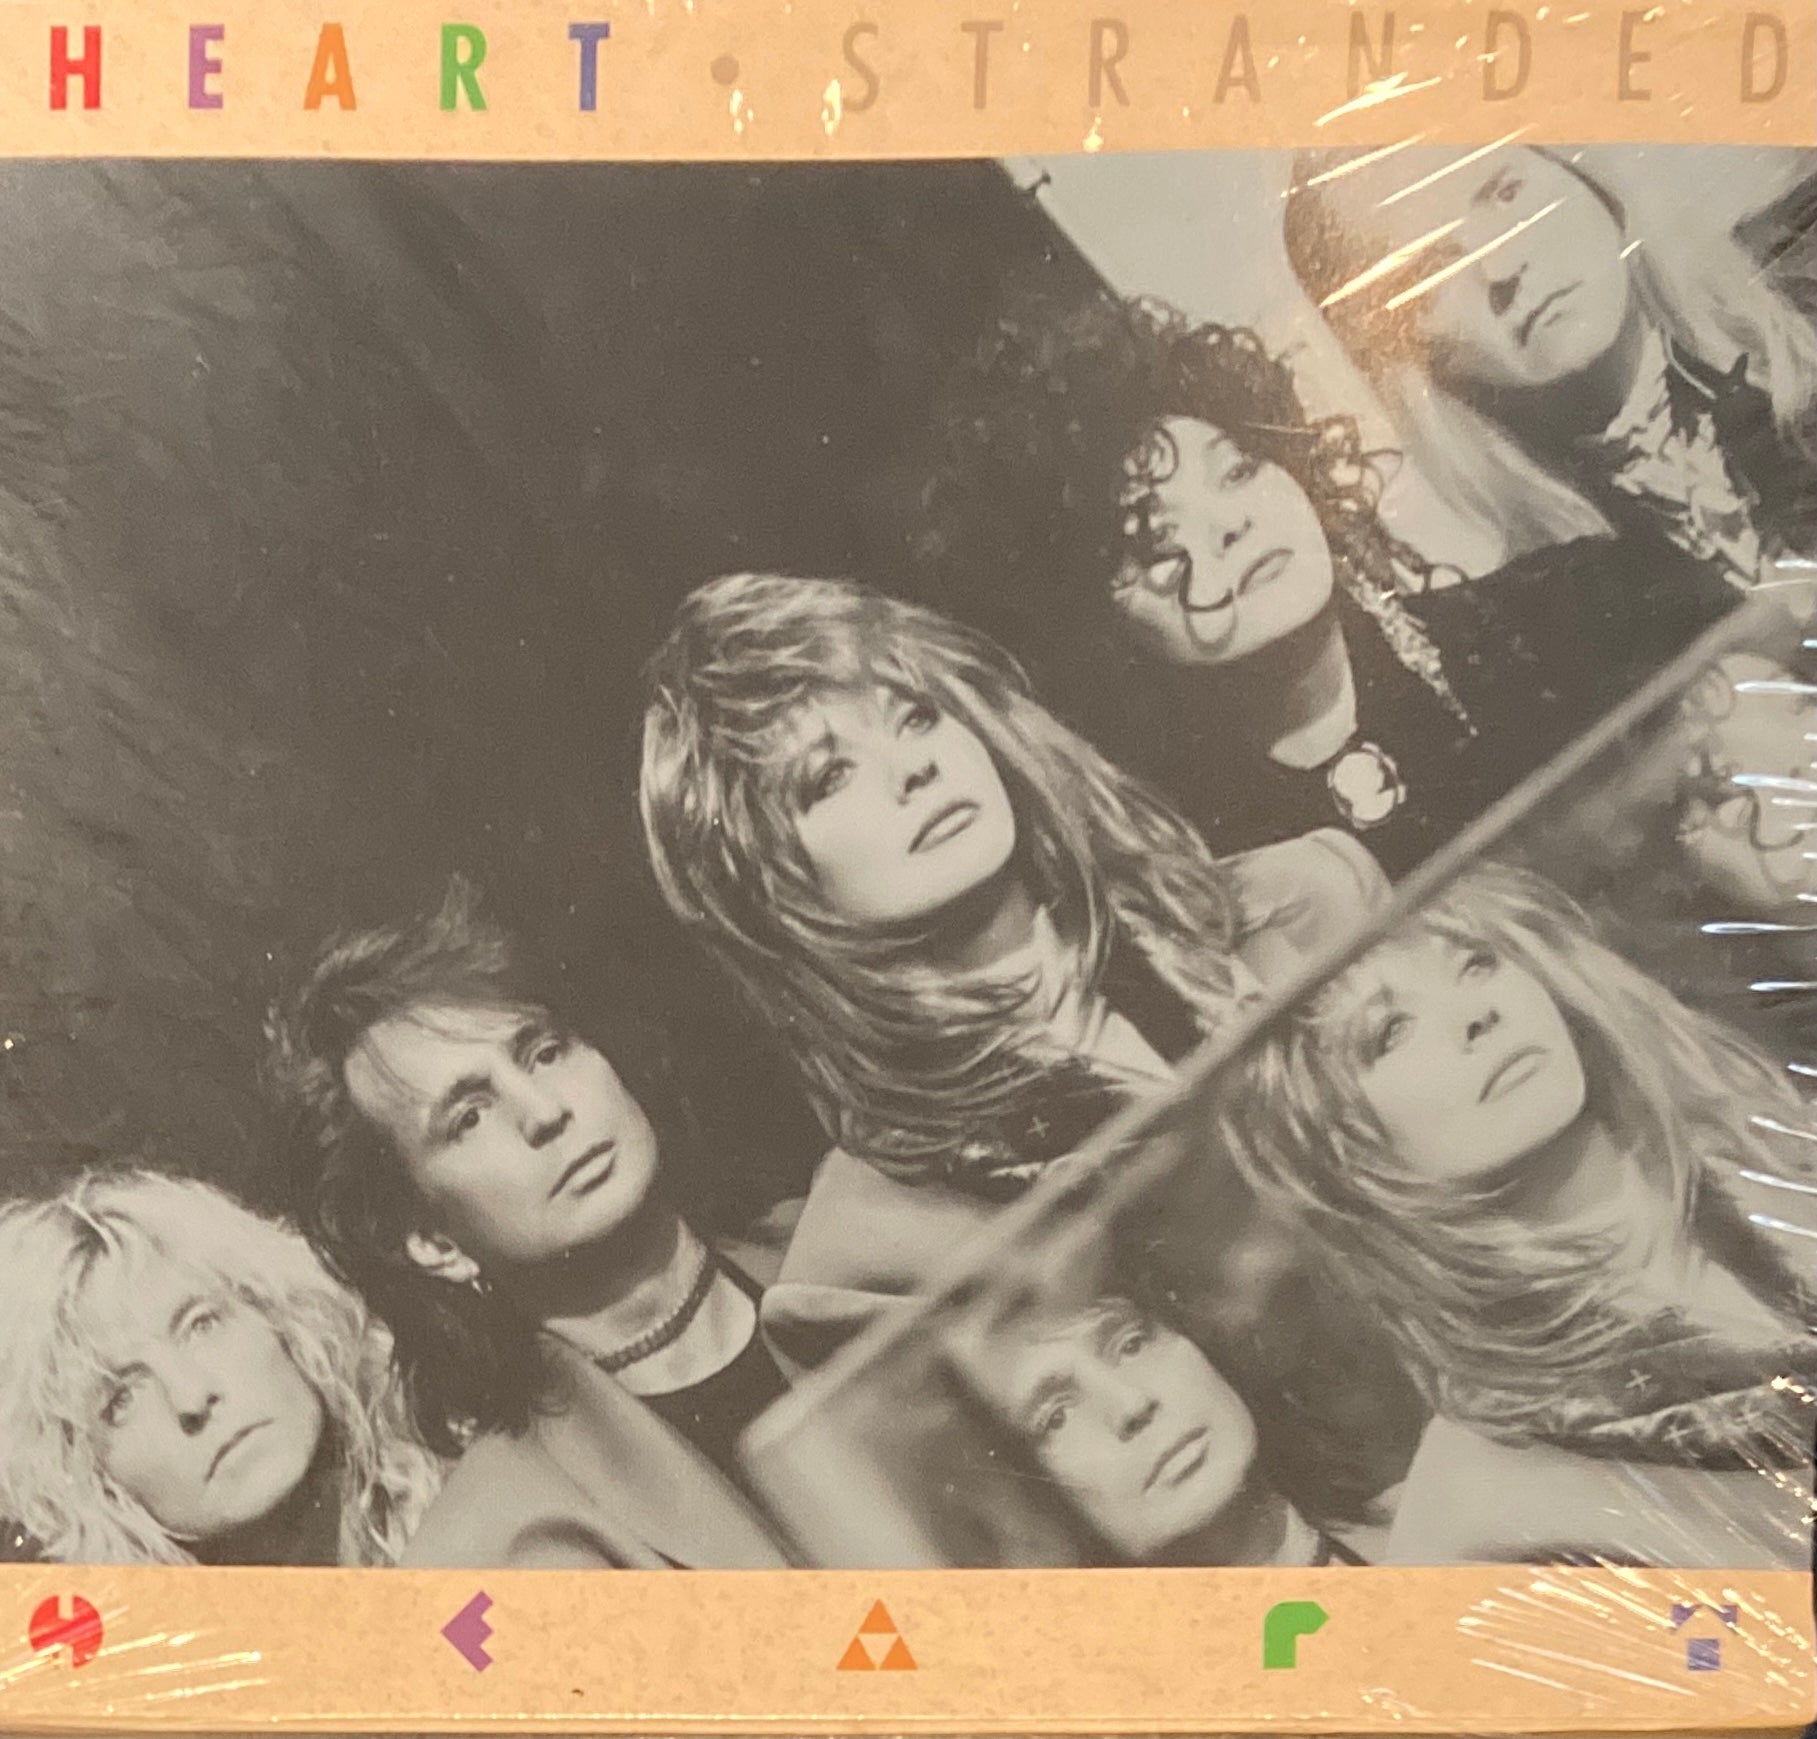 Heart "Stranded" CD Single (1990)